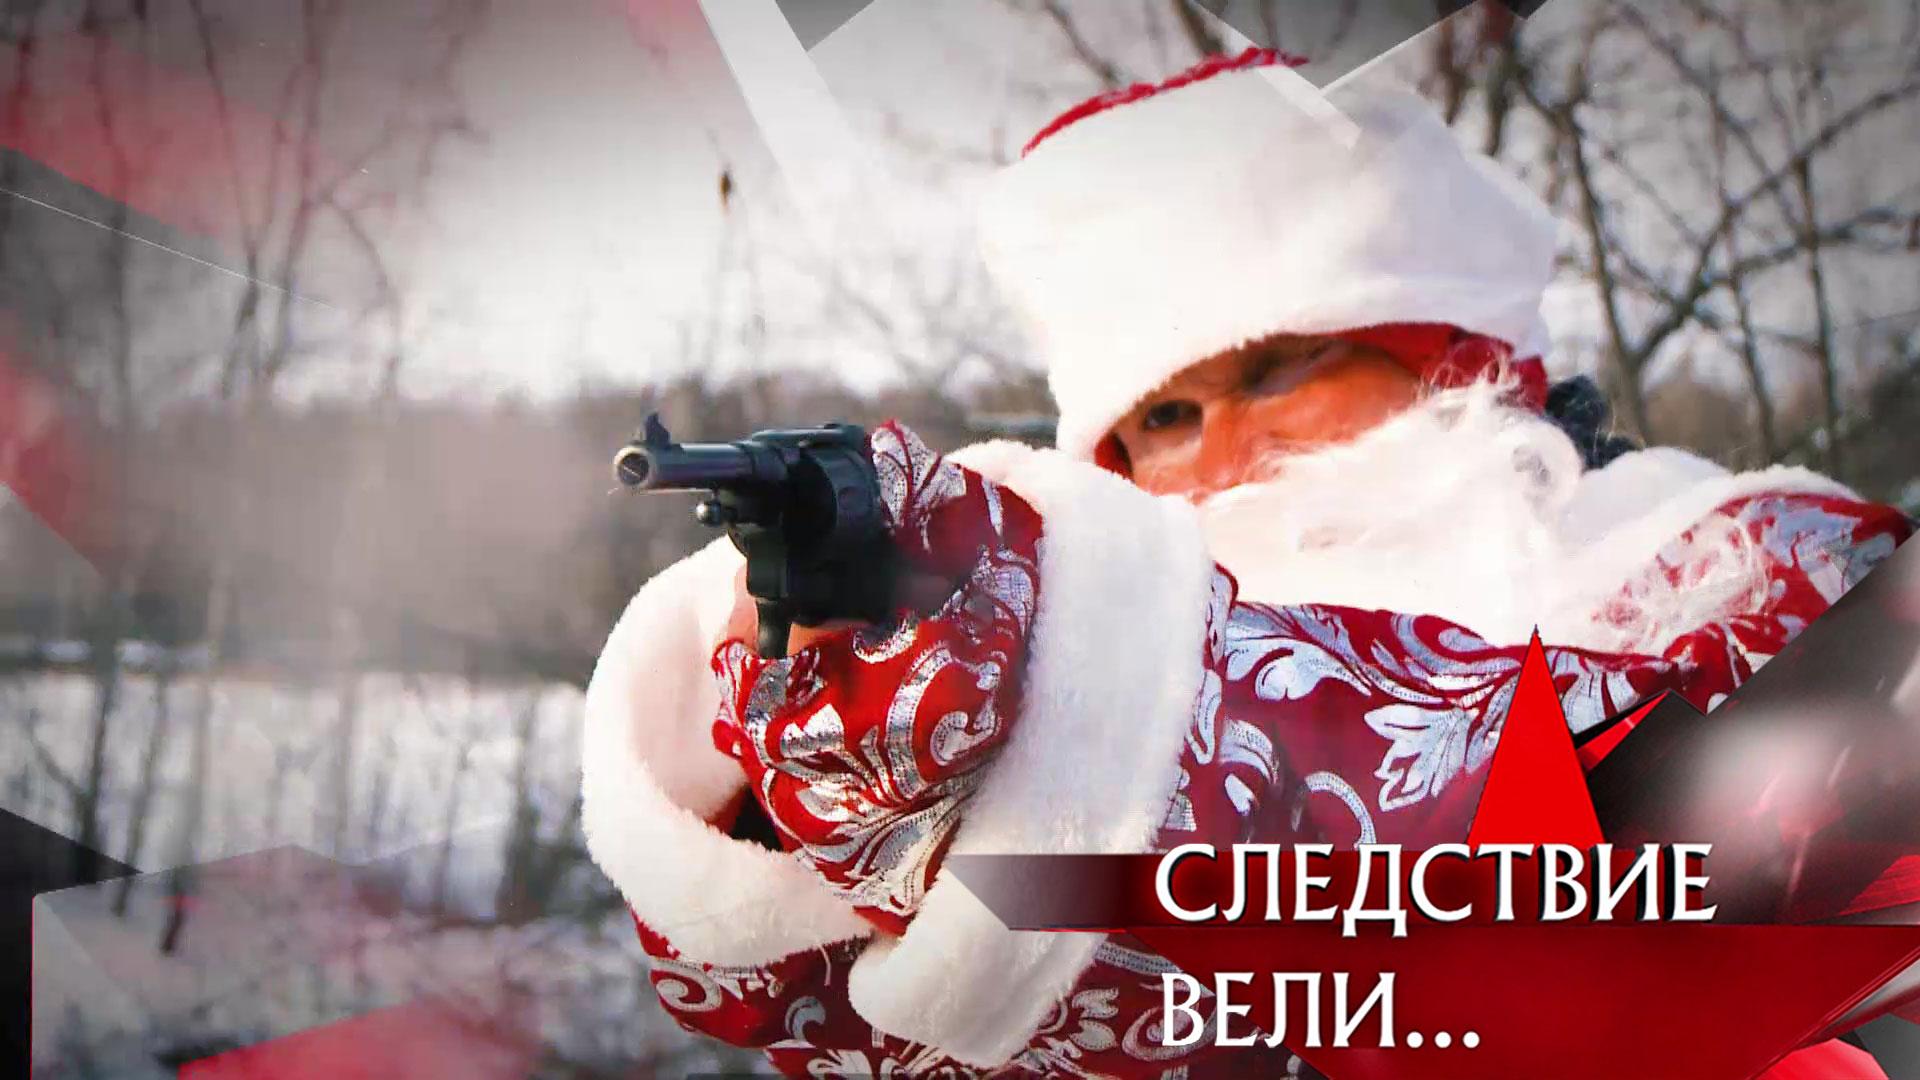 «Дед Мороз с пистолетом» | Фильм из цикла «Следствие вели...» с Леонидом Каневским